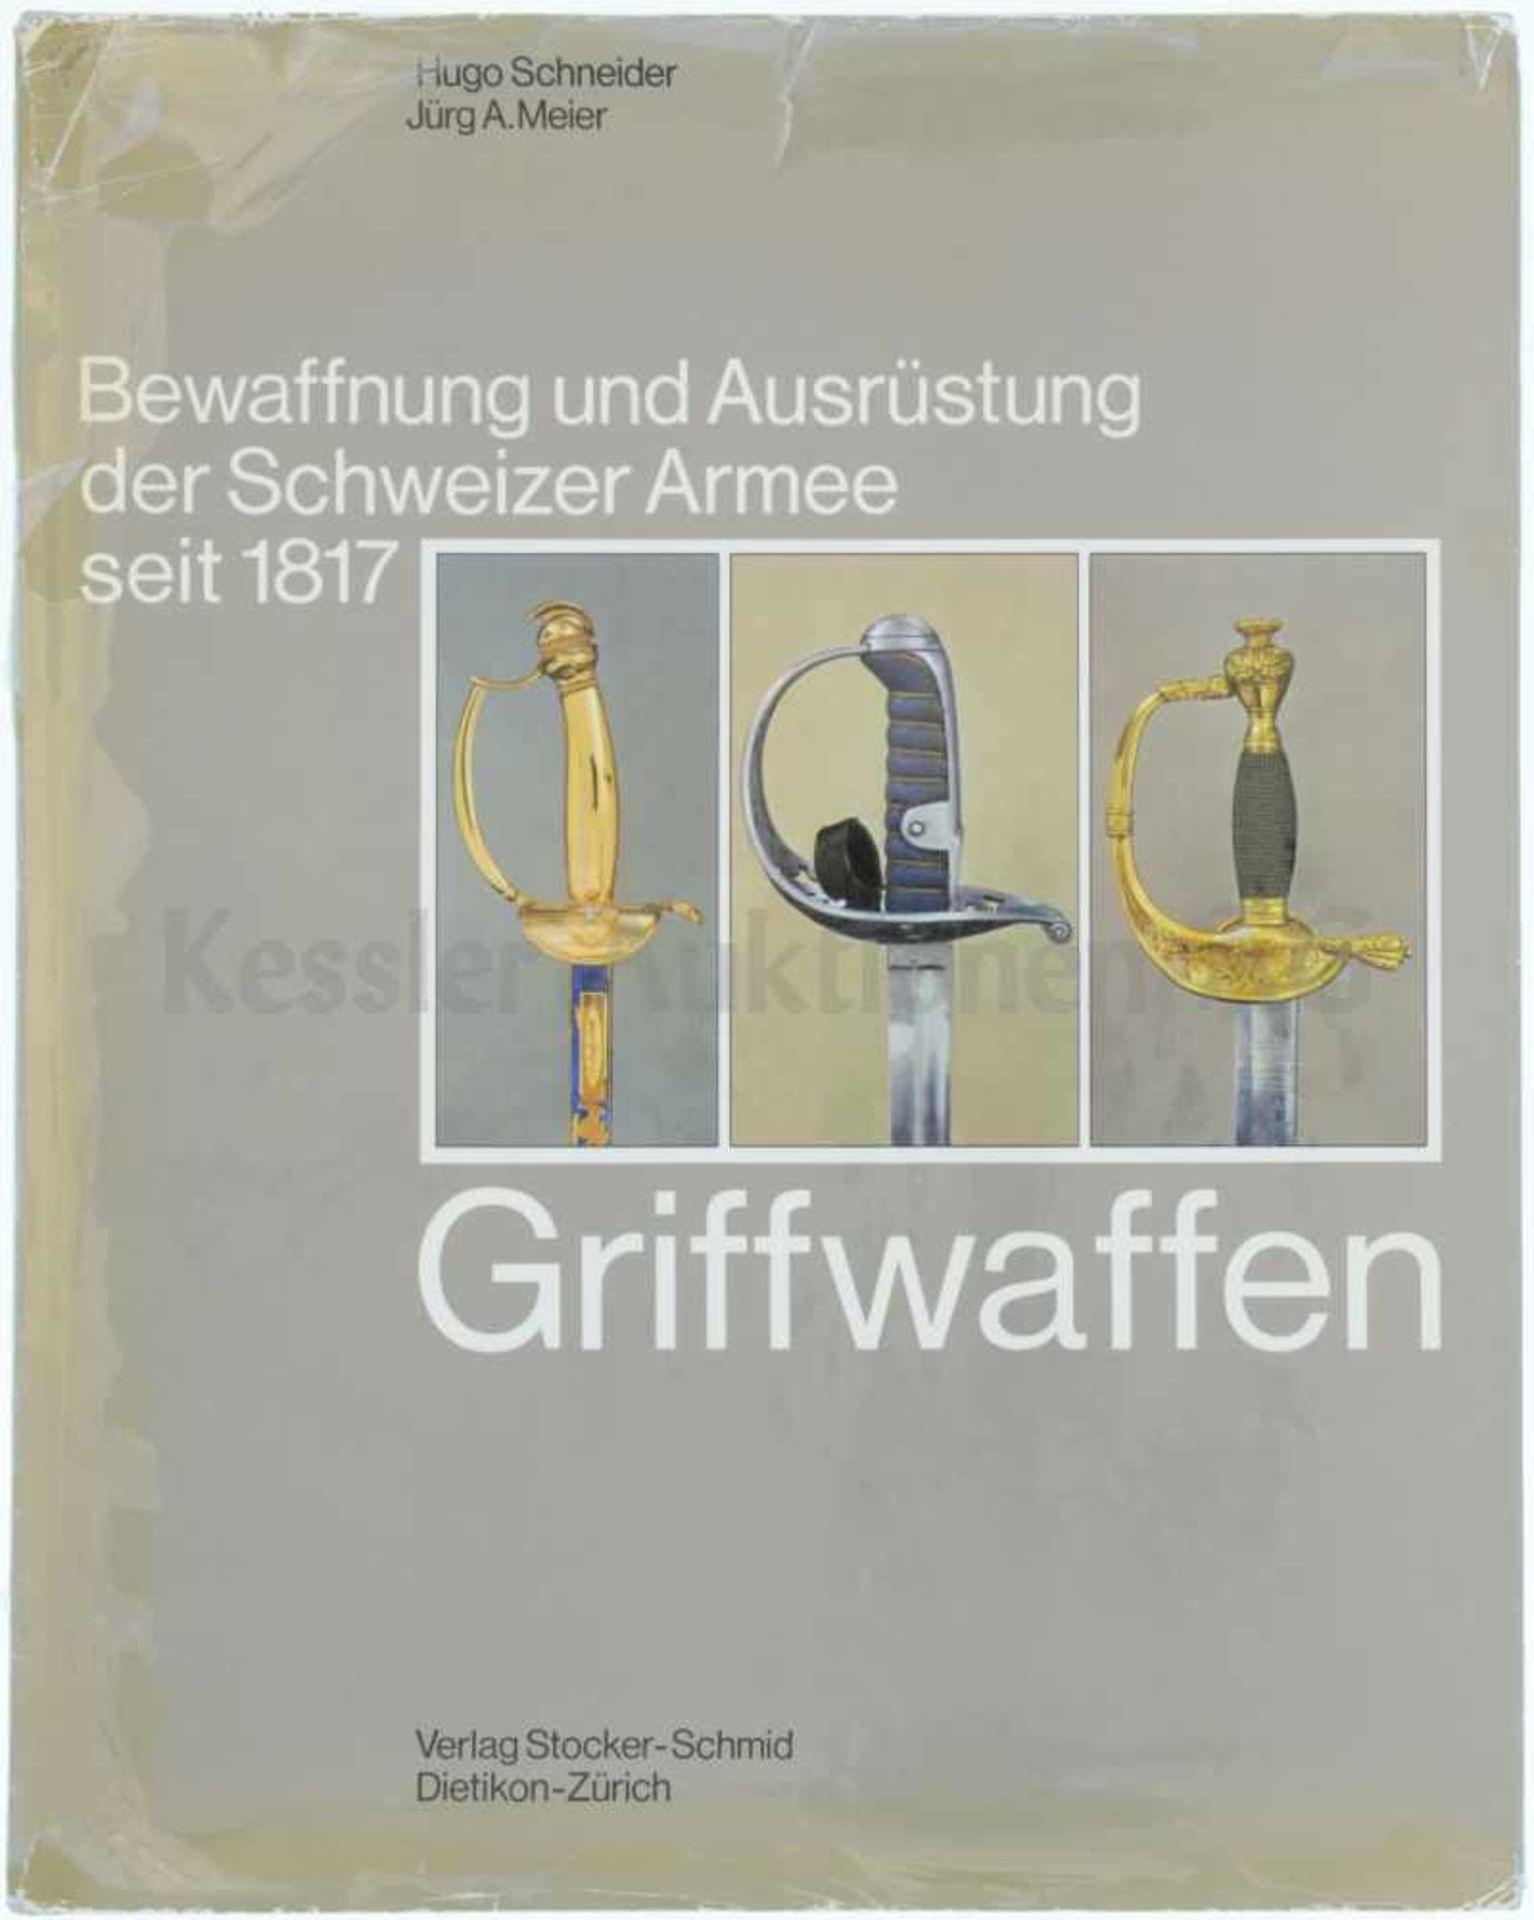 Griffwaffen, Band 7 aus der Reihe "Bewaffnung und Ausrüstung der Schweizer Armee seit 1817" Autoren: